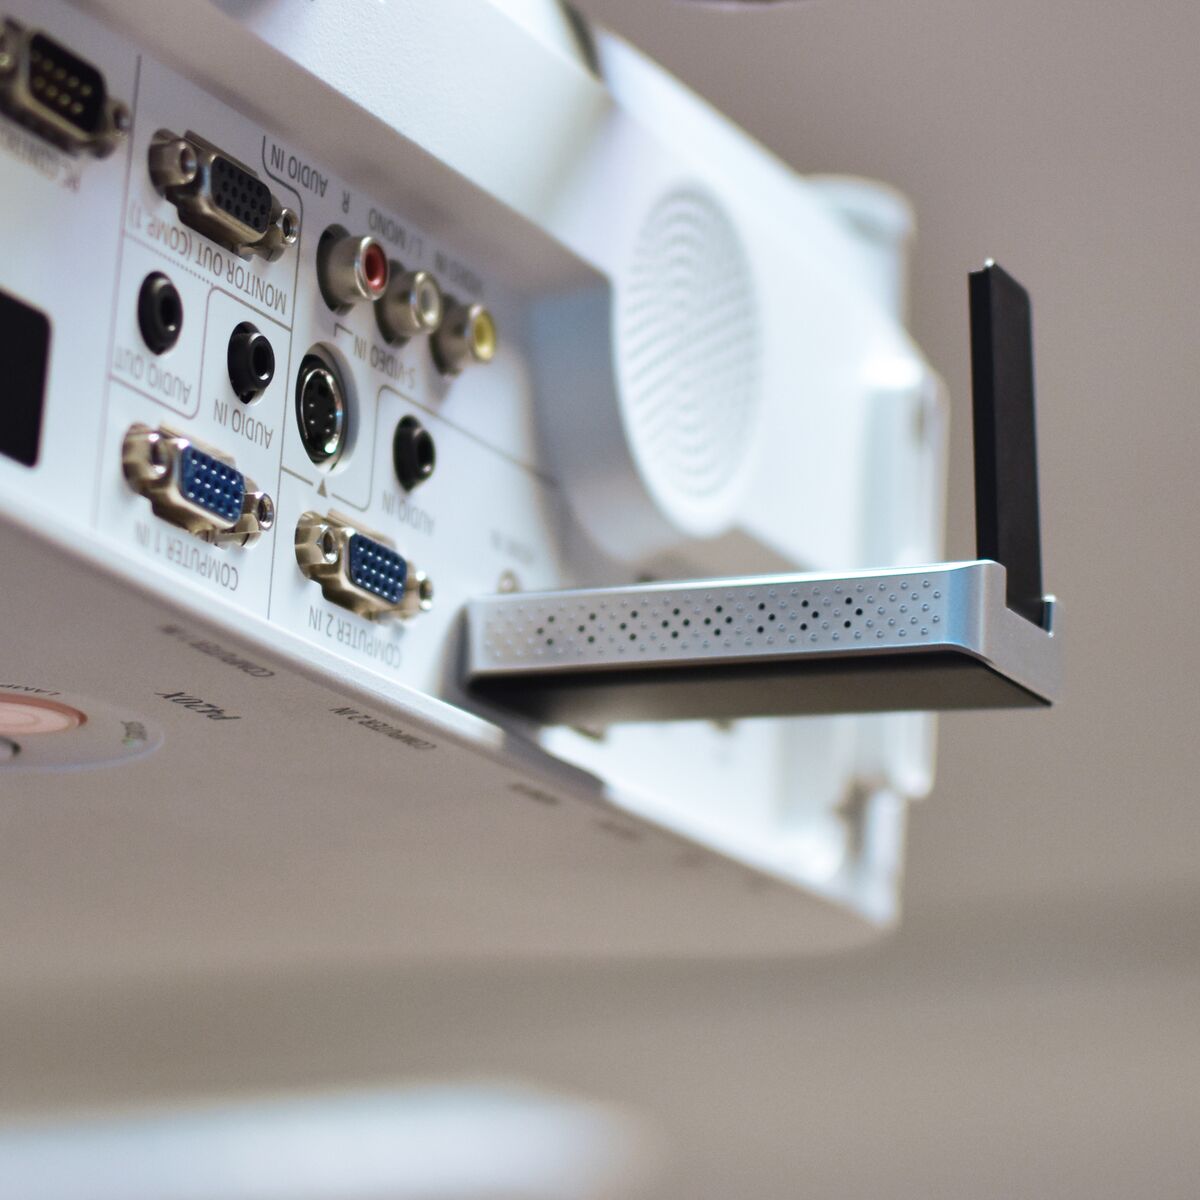 Stream S1 Pro - Wireless HDMI-Kabel - Kabelloses HDMI vom Laptop zum Display/Projektor